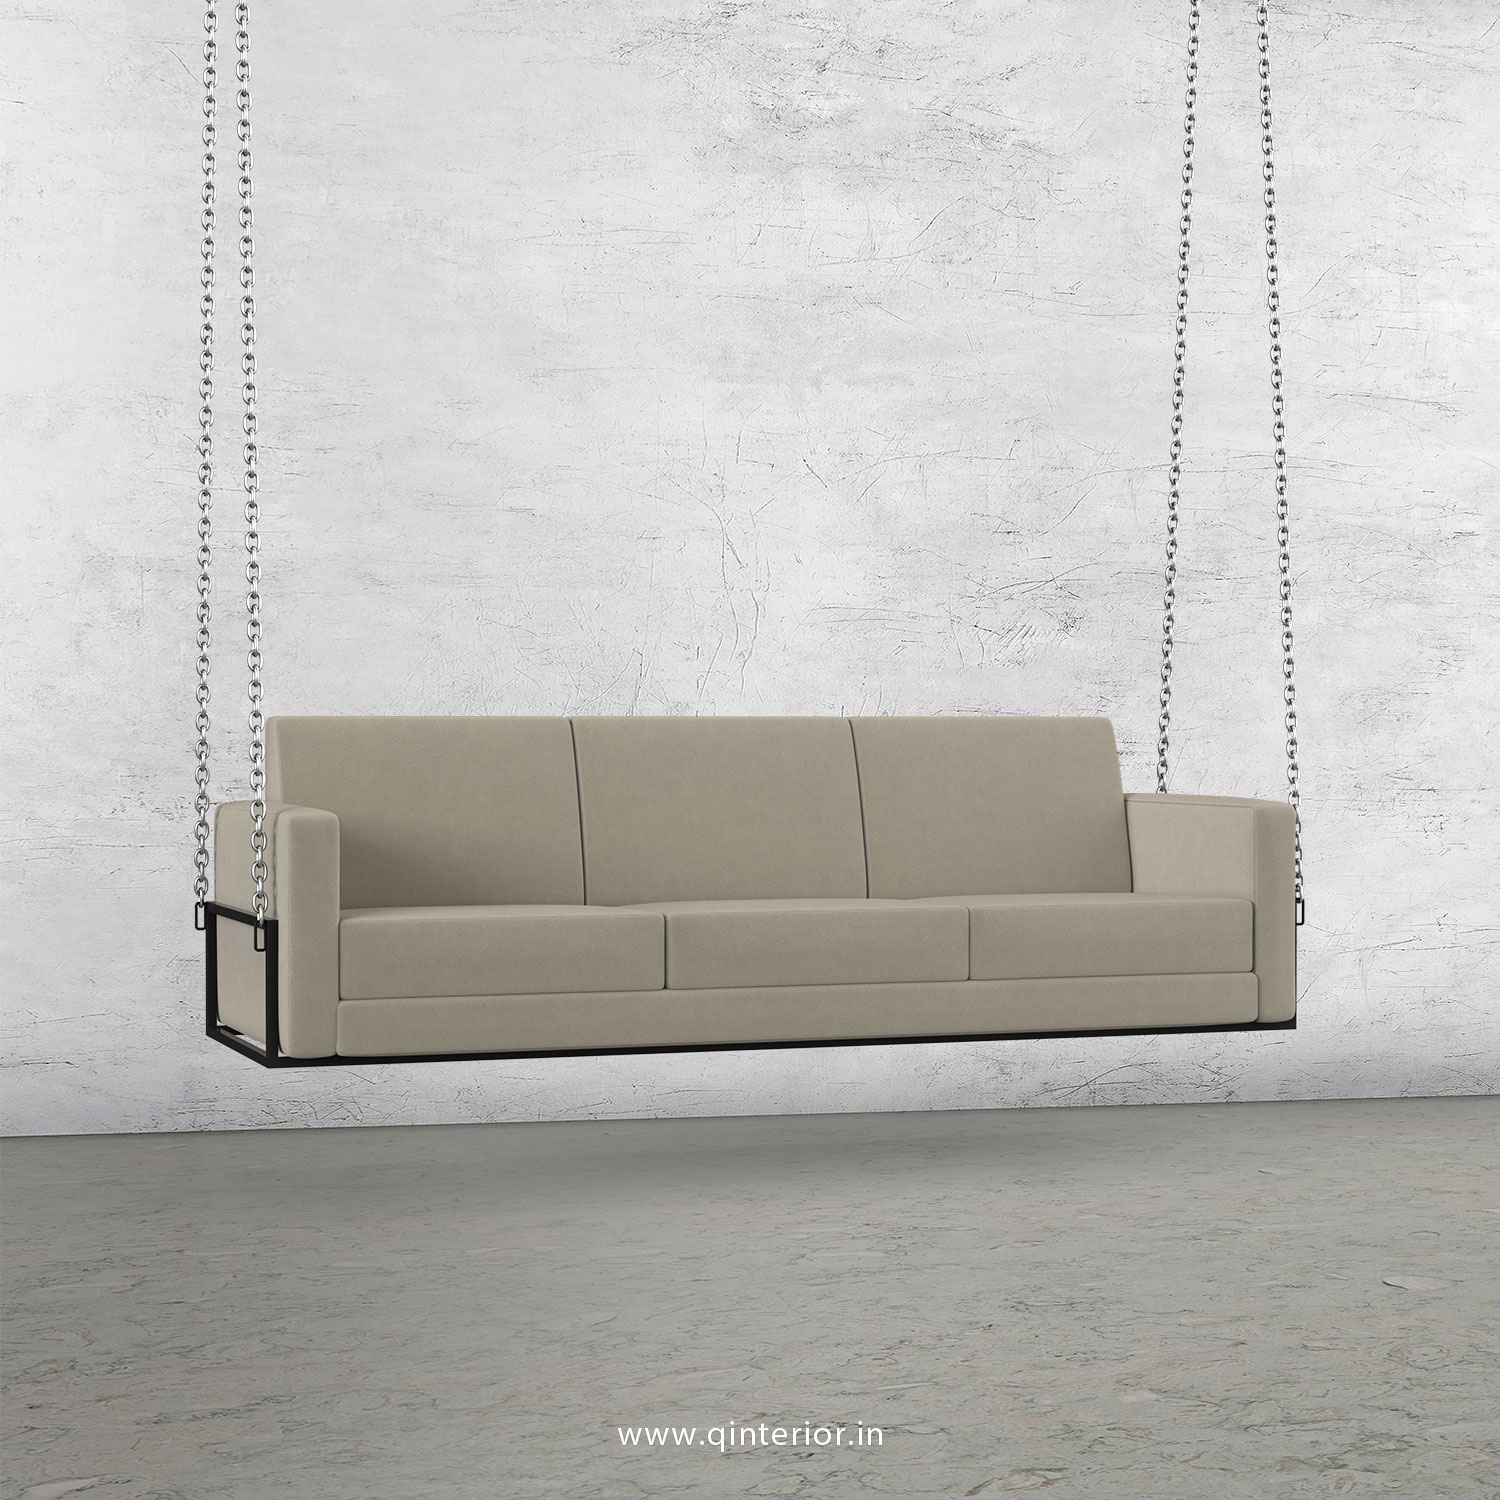 NIRVANA 3 Seater Swing Sofa in Velvet Fabric - SSF001 VL01